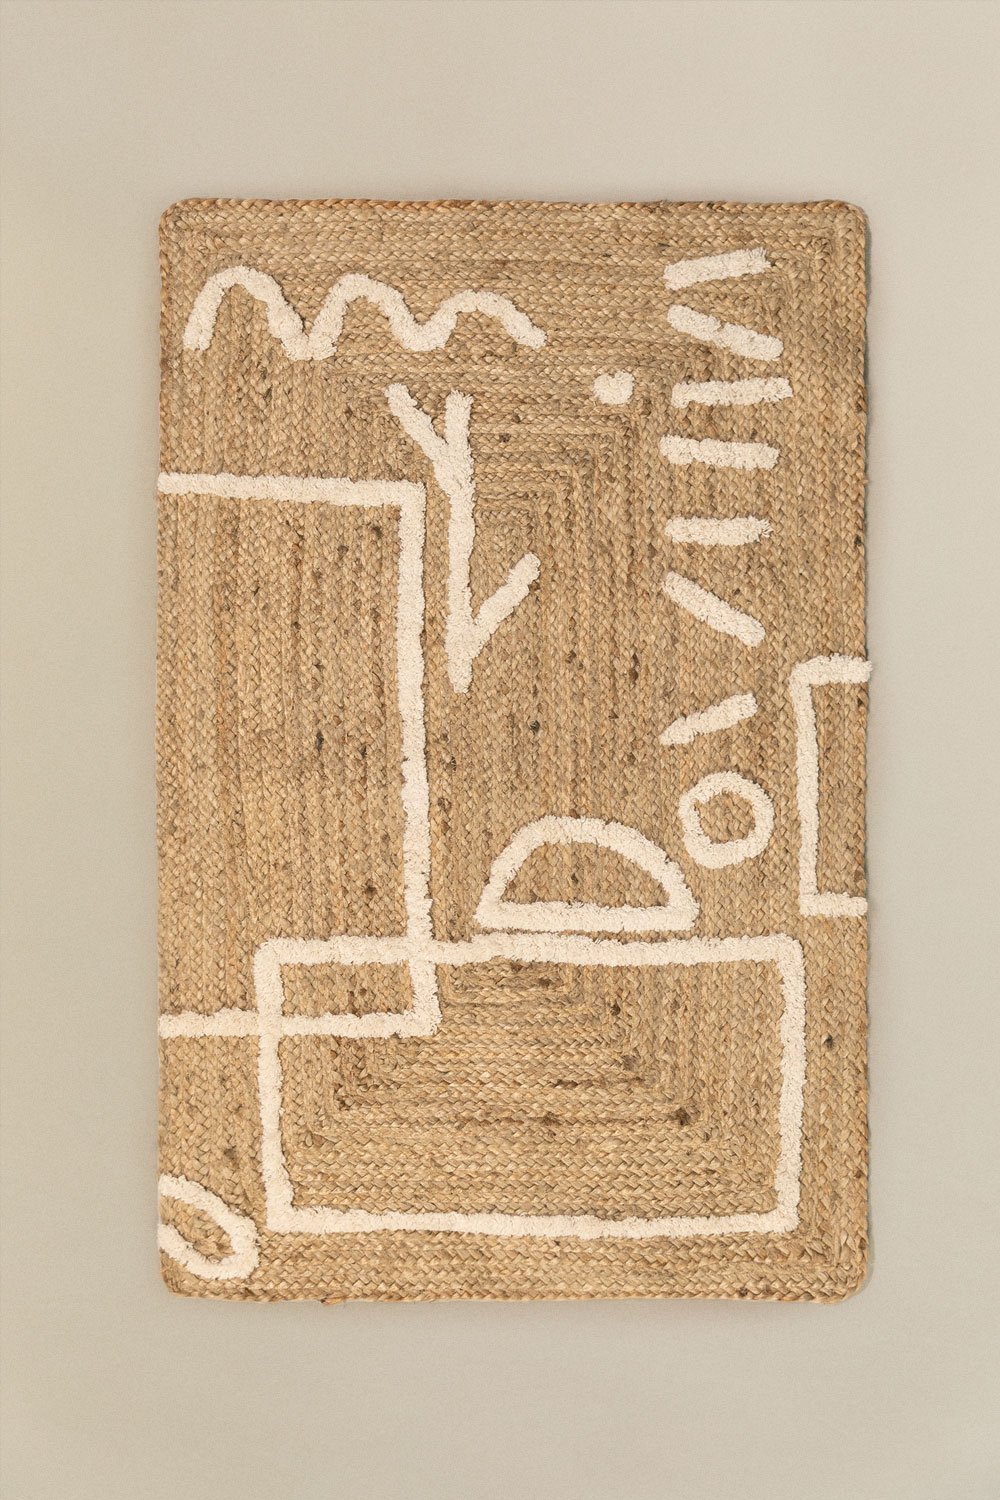 Dywan z juty i bawelny (112x71 cm) Dudle, obrazek w galerii 1